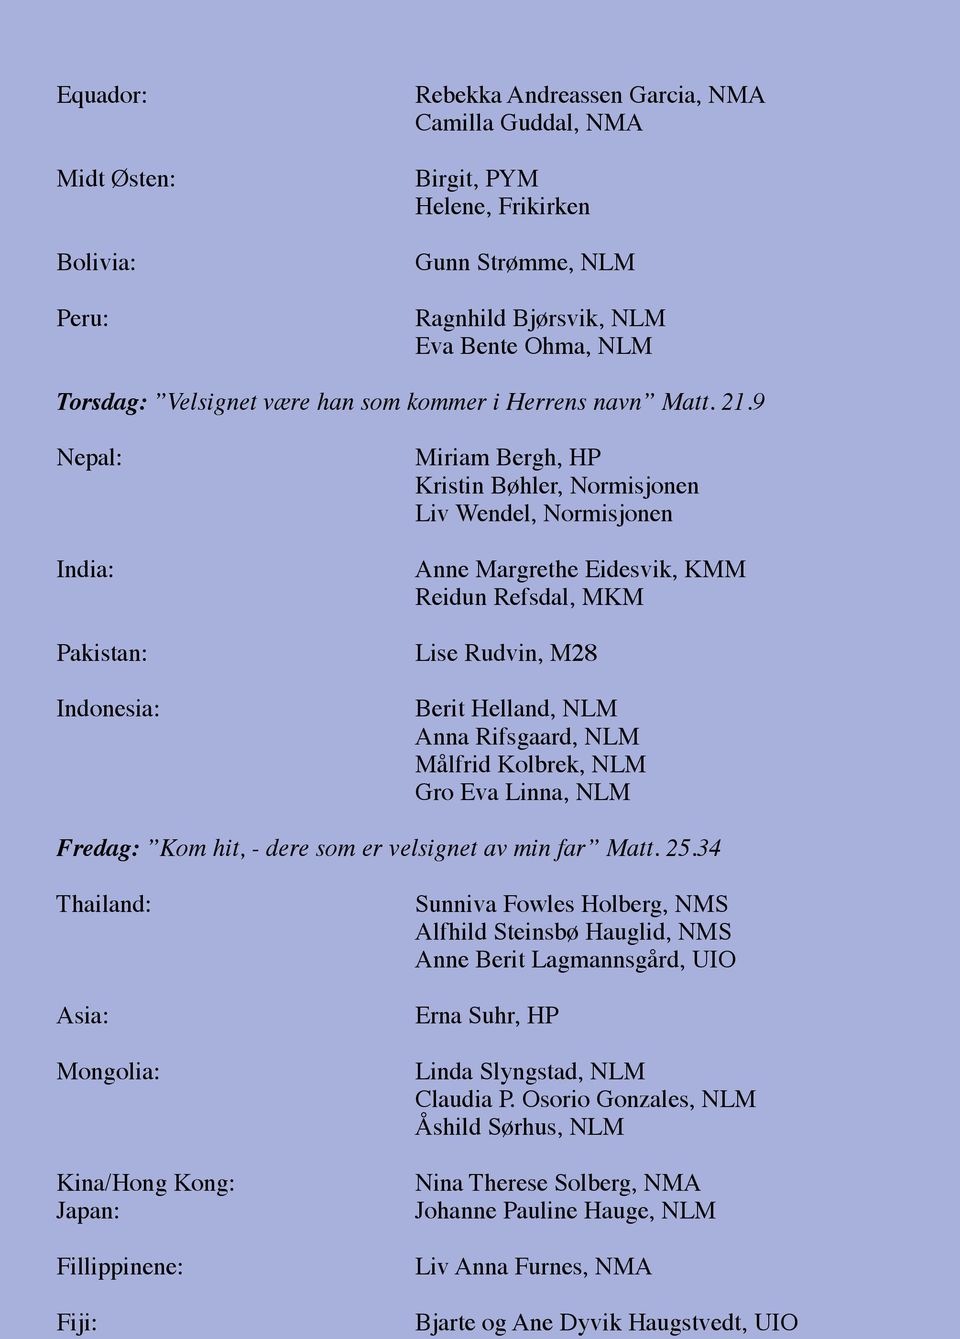 9 Nepal: India: Pakistan: Indonesia: Miriam Bergh, HP Kristin Bøhler, Normisjonen Liv Wendel, Normisjonen Anne Margrethe Eidesvik, KMM Reidun Refsdal, MKM Lise Rudvin, M28 Berit Helland, NLM Anna